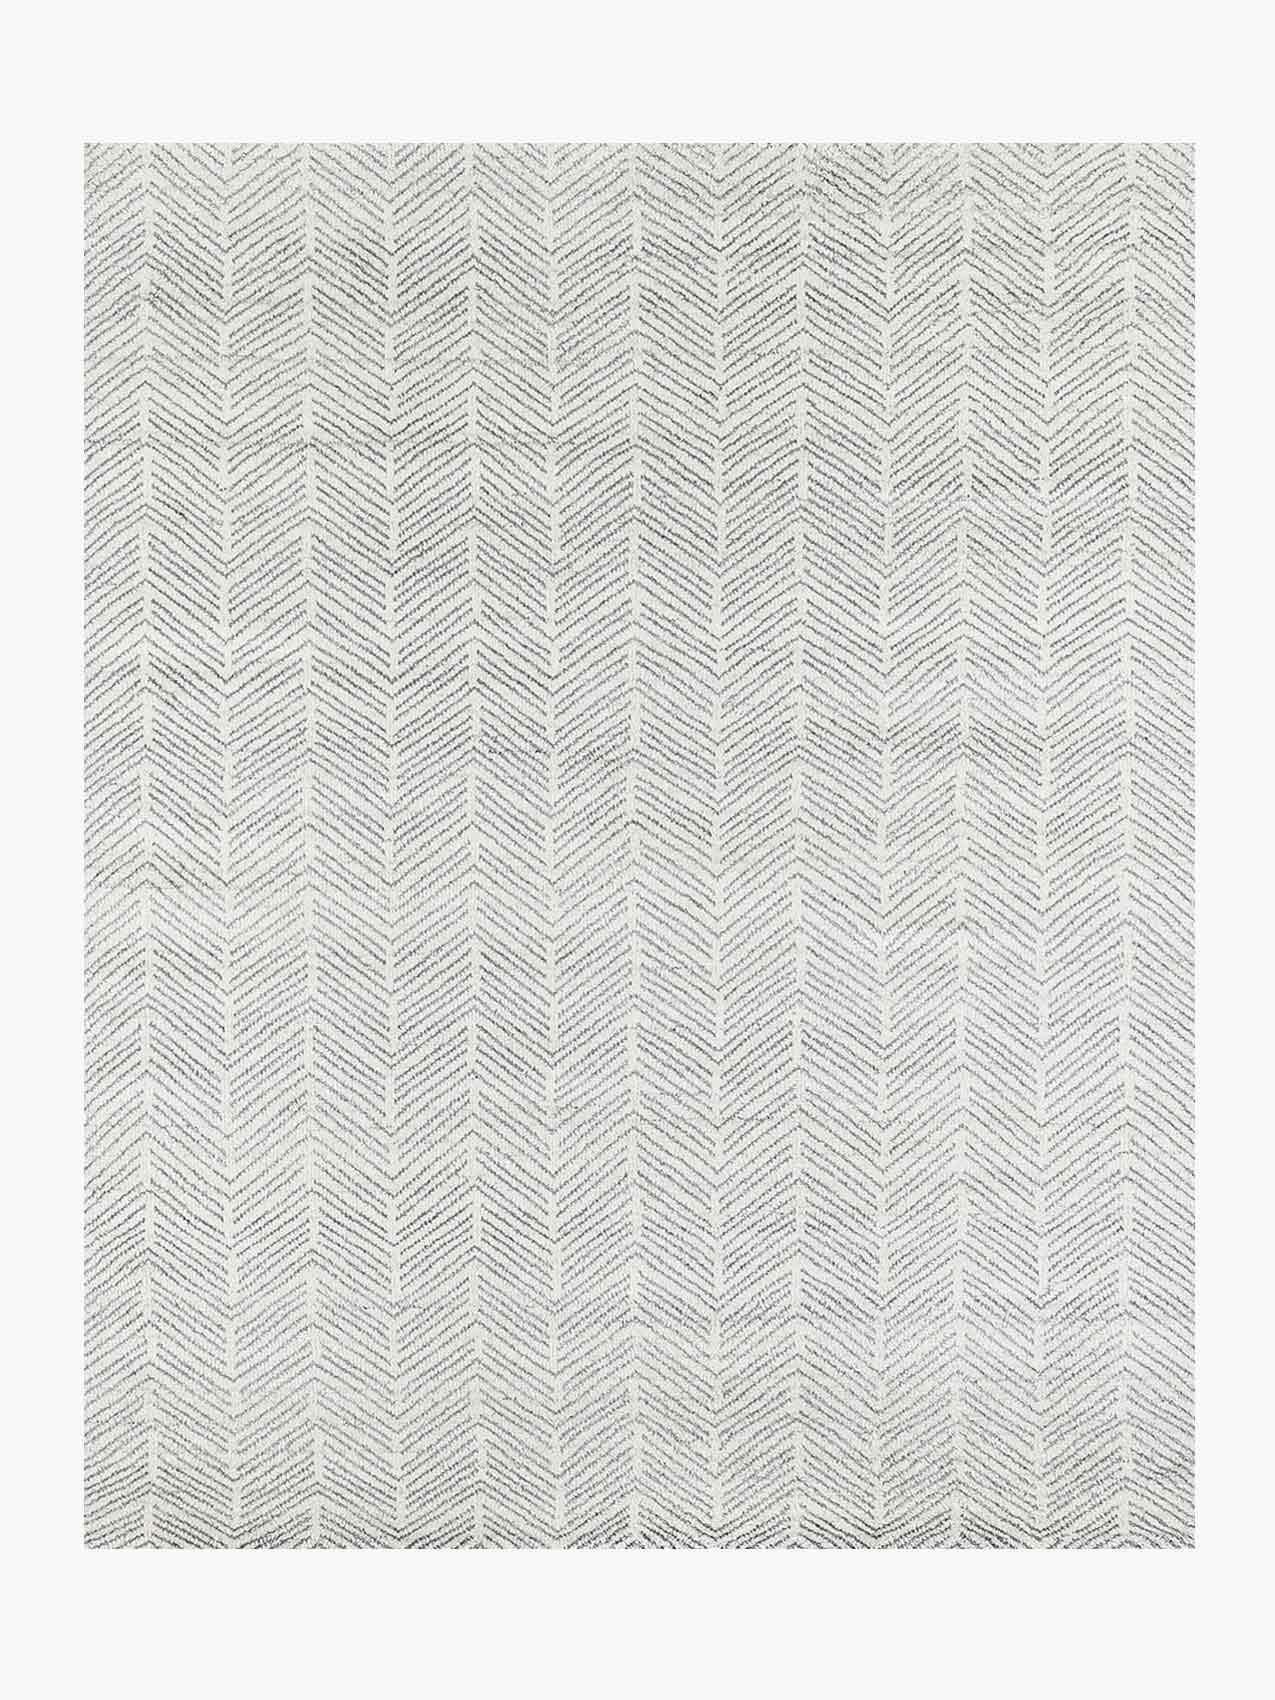 For Sale: White (White/Silver) Ben Soleimani Alia Rug– Hand-woven Chevron Wool + Viscose Black/Gray 8'x10'